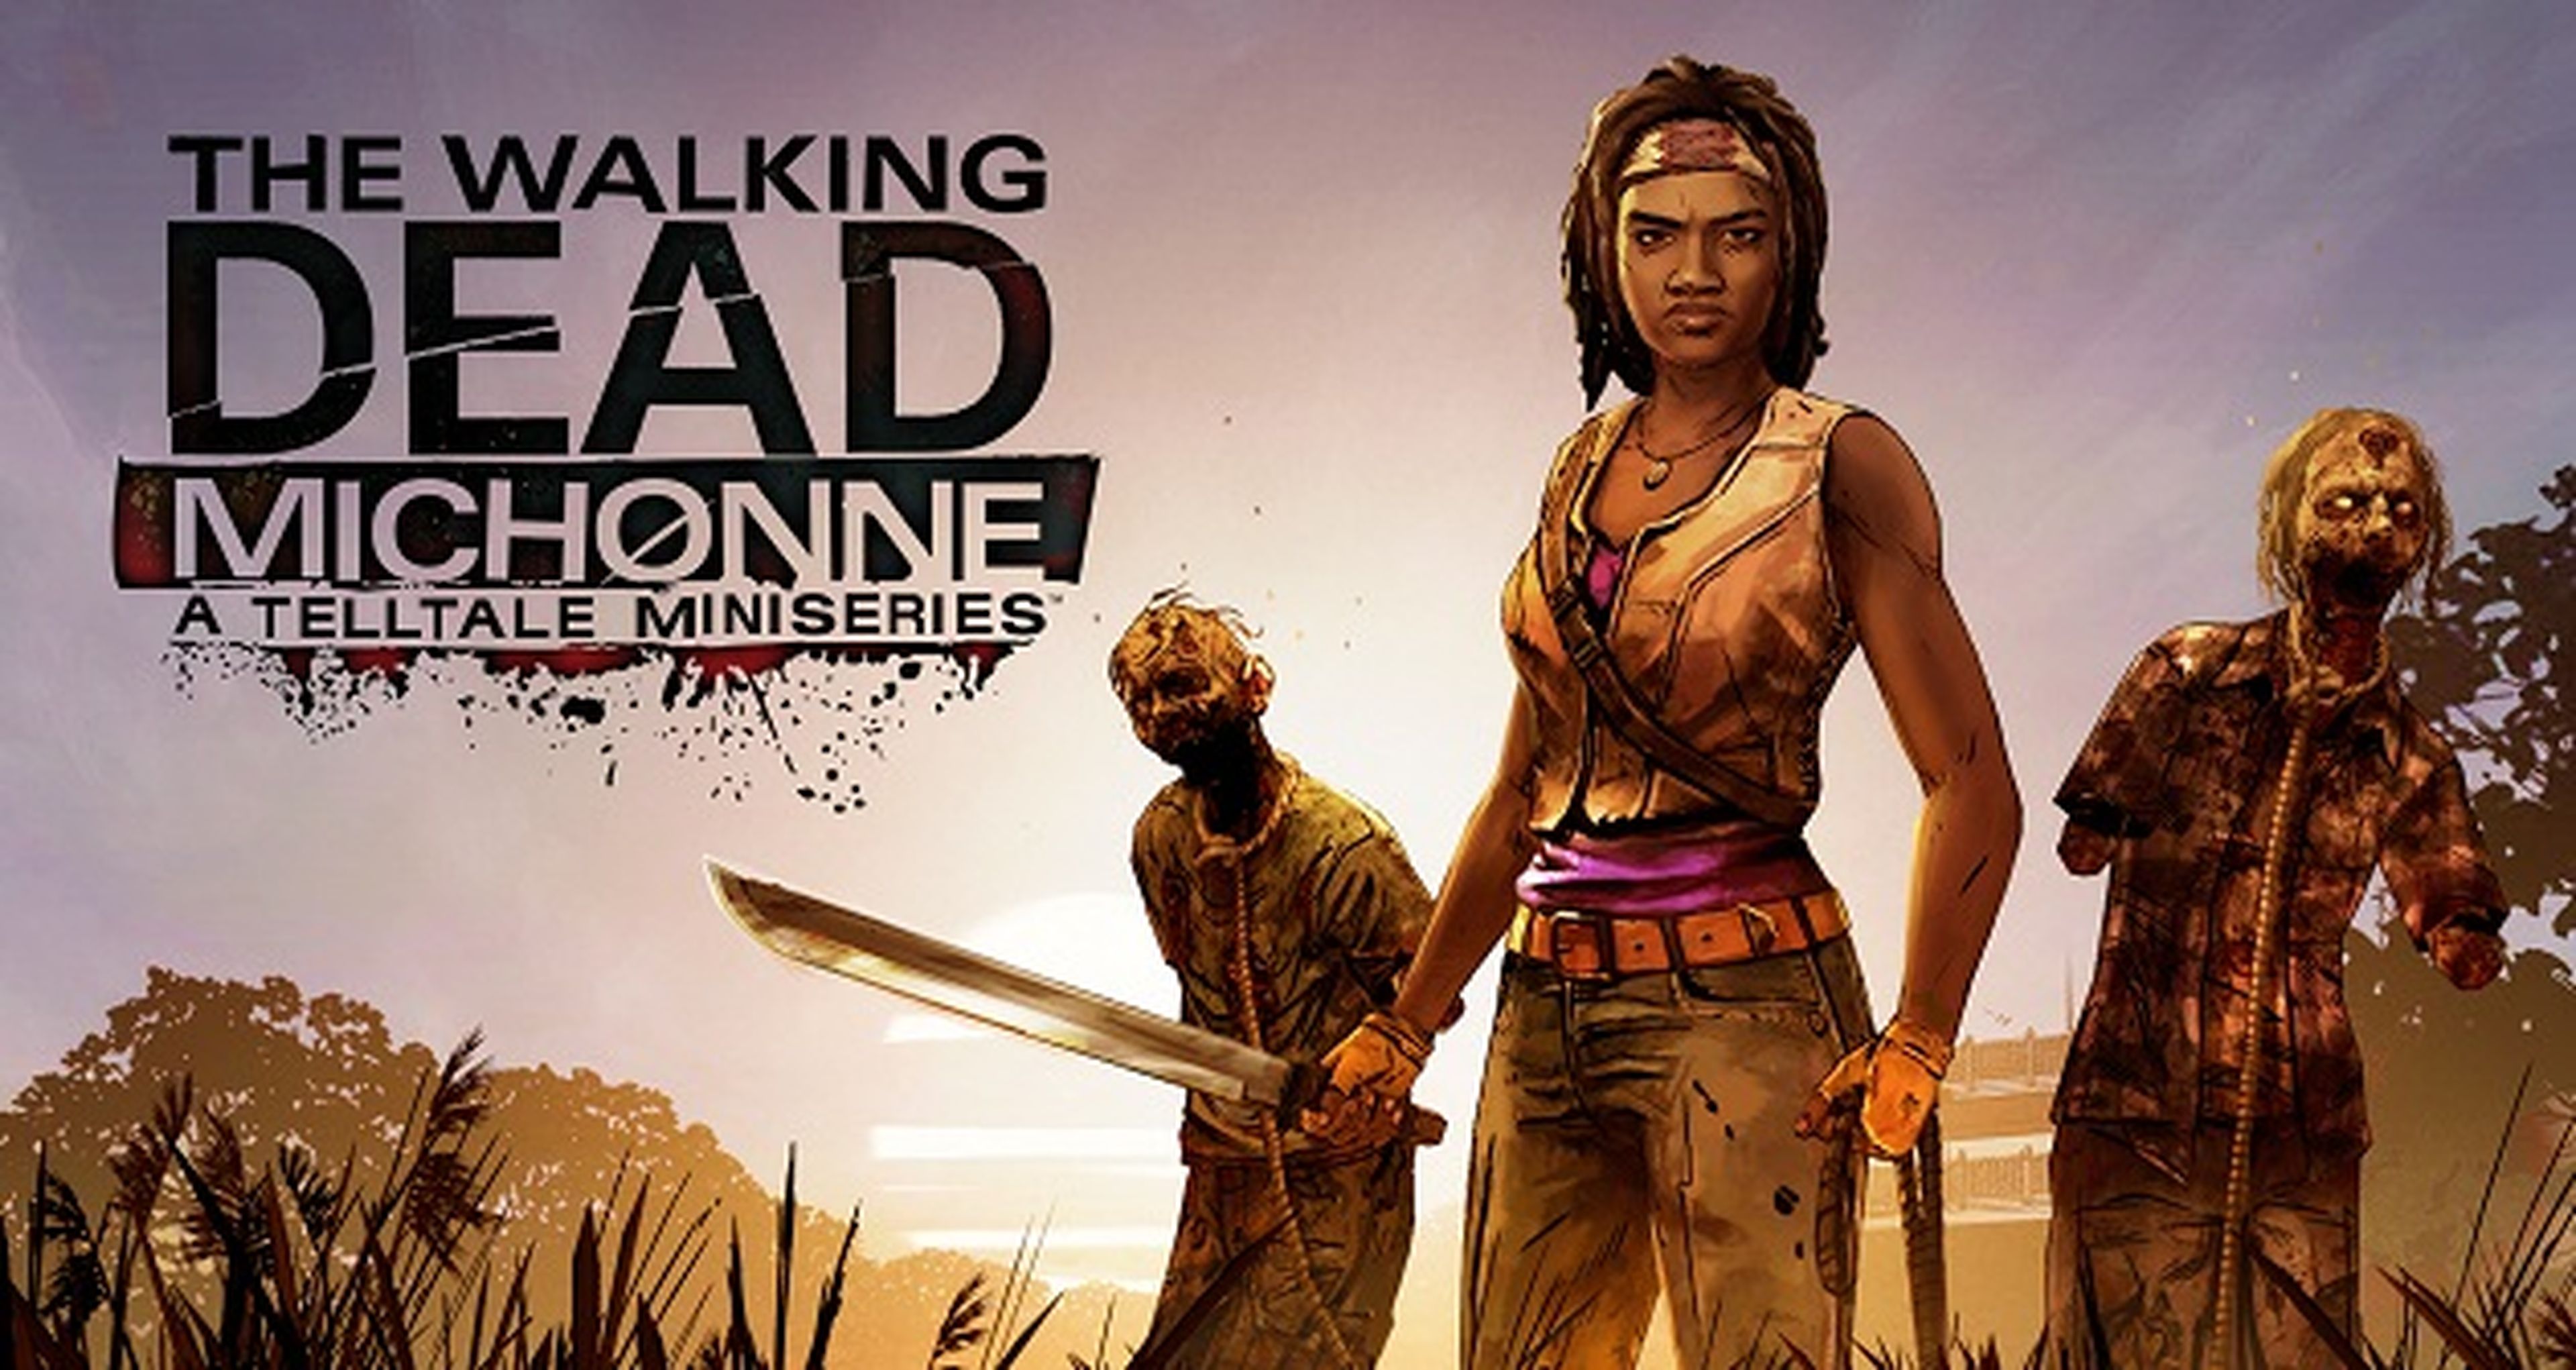 The Walking Dead Michonne: Episodio 1 - Fecha de lanzamiento